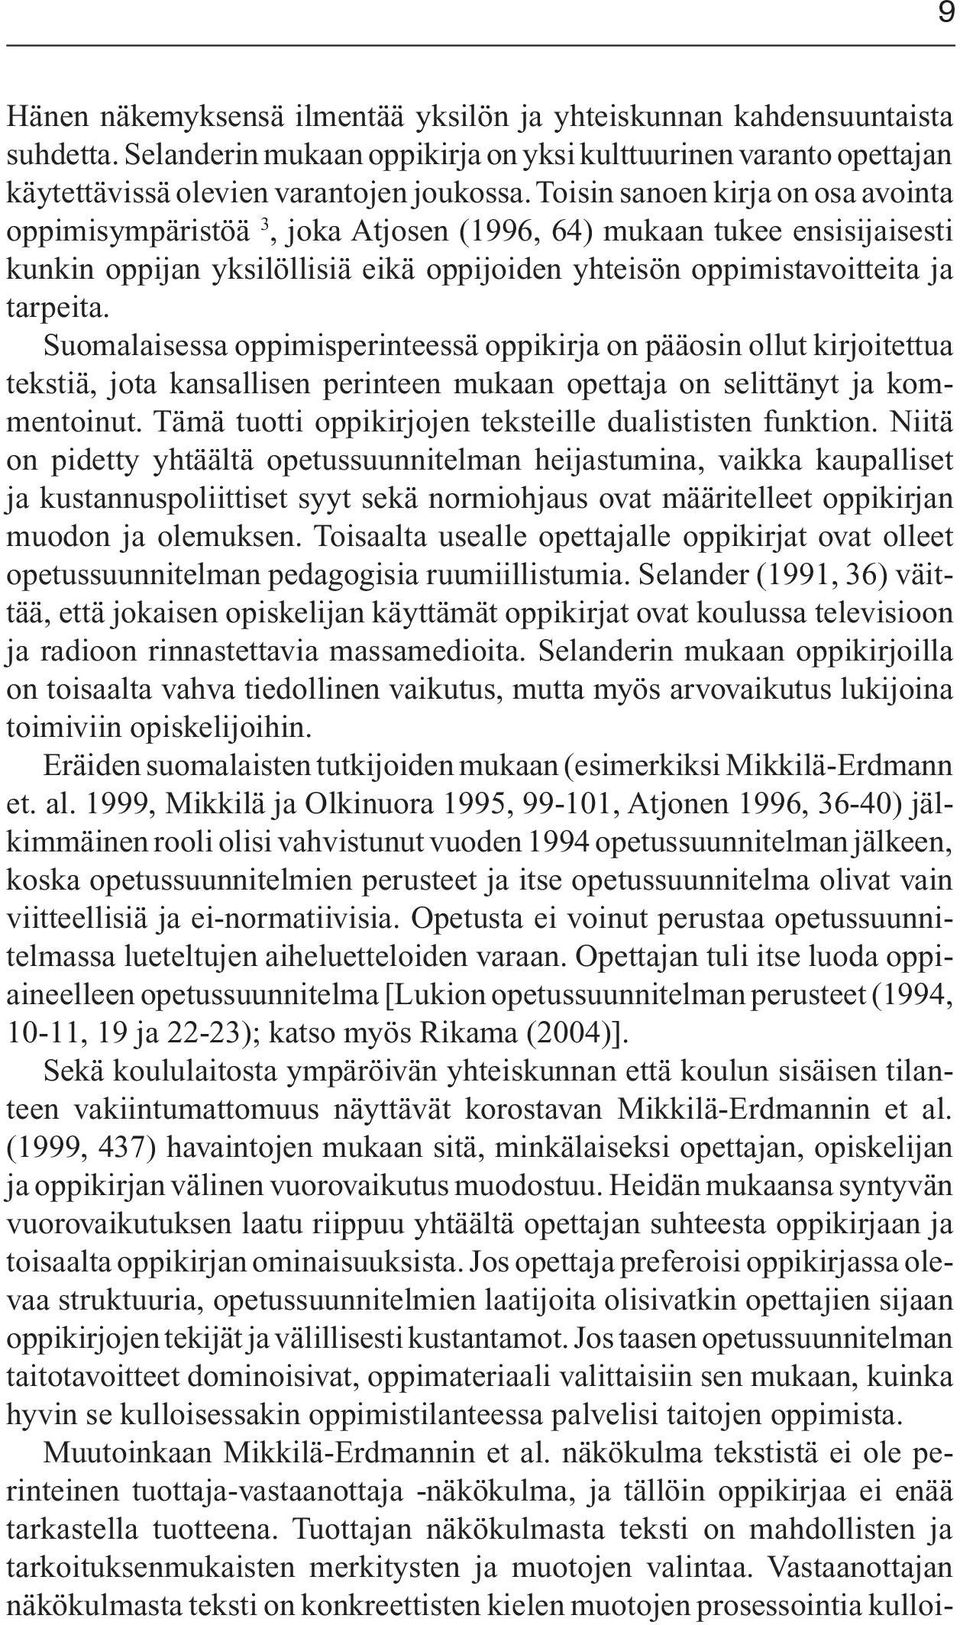 Suomalaisessa oppimisperinteessä oppikirja on pääosin ollut kirjoitettua tekstiä, jota kansallisen perinteen mukaan opettaja on selittänyt ja kommentoinut.